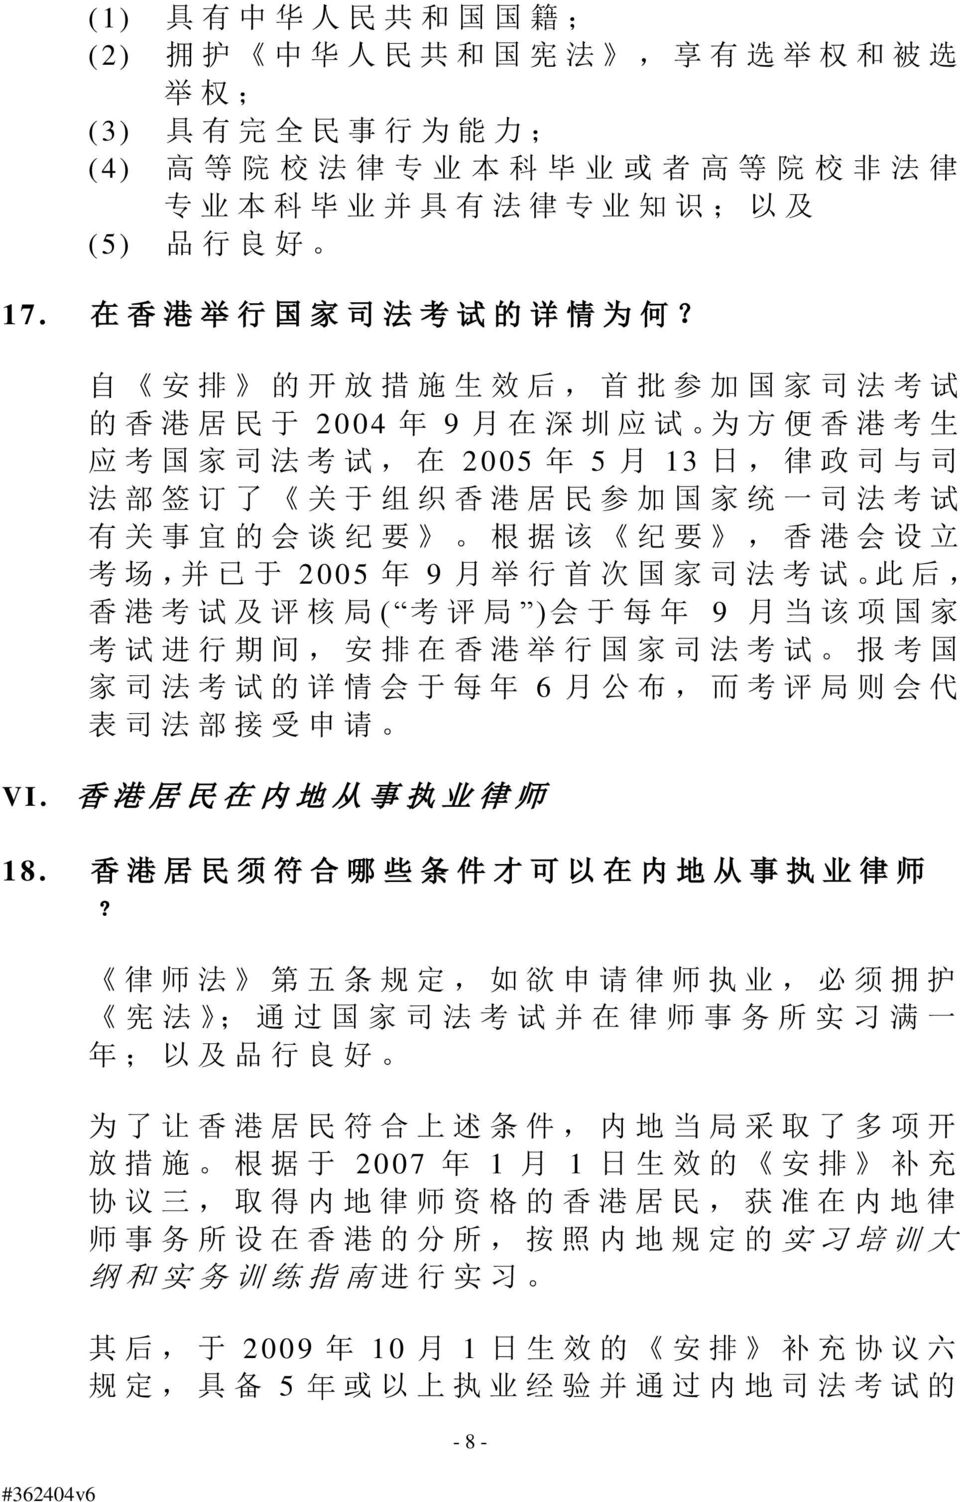 自 安 排 的 开 放 措 施 生 效 后, 首 批 参 加 国 家 司 法 考 试 的 香 港 居 民 于 2004 年 9 月 在 深 圳 应 试 为 方 便 香 港 考 生 应 考 国 家 司 法 考 试, 在 2005 年 5 月 13 日, 律 政 司 与 司 法 部 签 订 了 关 于 组 织 香 港 居 民 参 加 国 家 统 一 司 法 考 试 有 关 事 宜 的 会 谈 纪 要